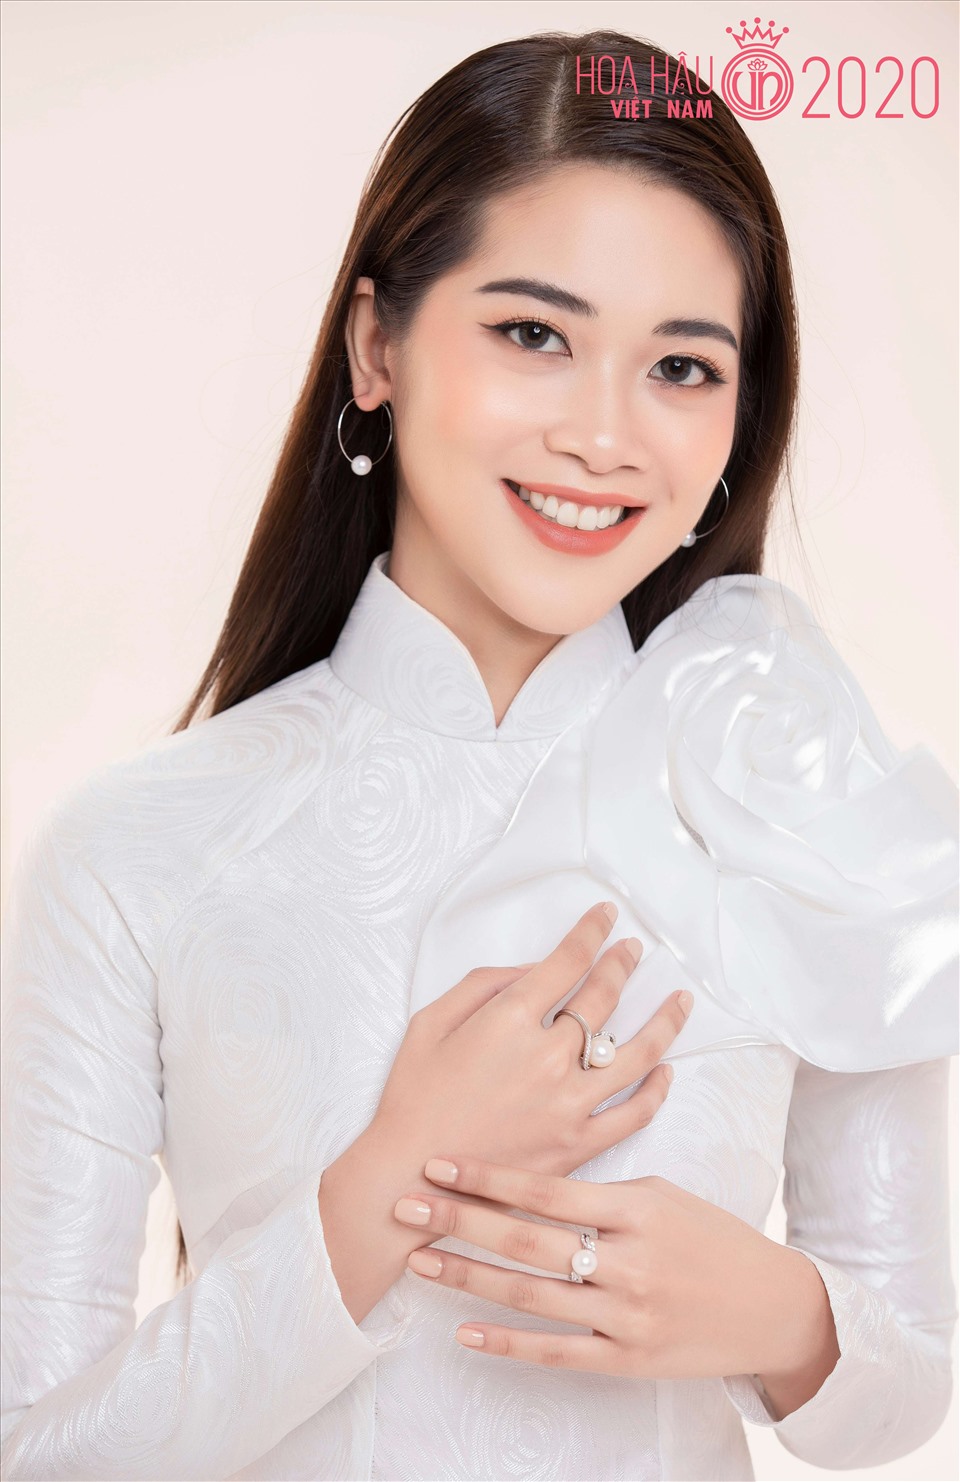 Vũ Quỳnh Trang sinh năm 1997, đến từ Nam Định. Cô từng tốt nghiệp ngành Truyền thông Quốc tế tại Học viện Ngoại giao. Cô vốn không phải gương mặt quá xa lạ với khán giả bởi trước đó, Quỳnh Trang từng lọt top 10 Miss Universe Việt Nam 2019. Ảnh: Lê Thiện Viễn.